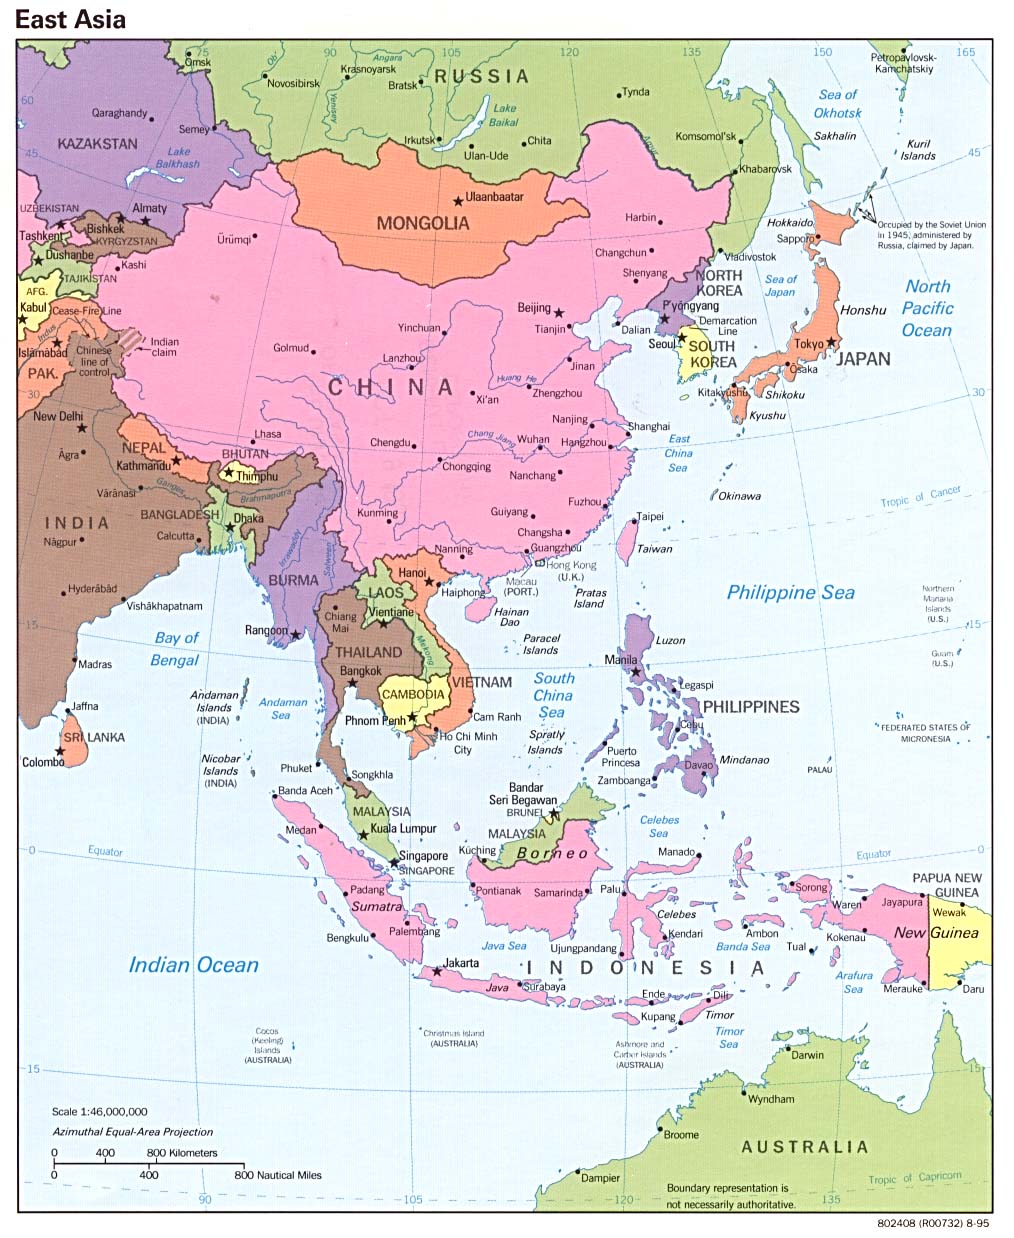 huang river map